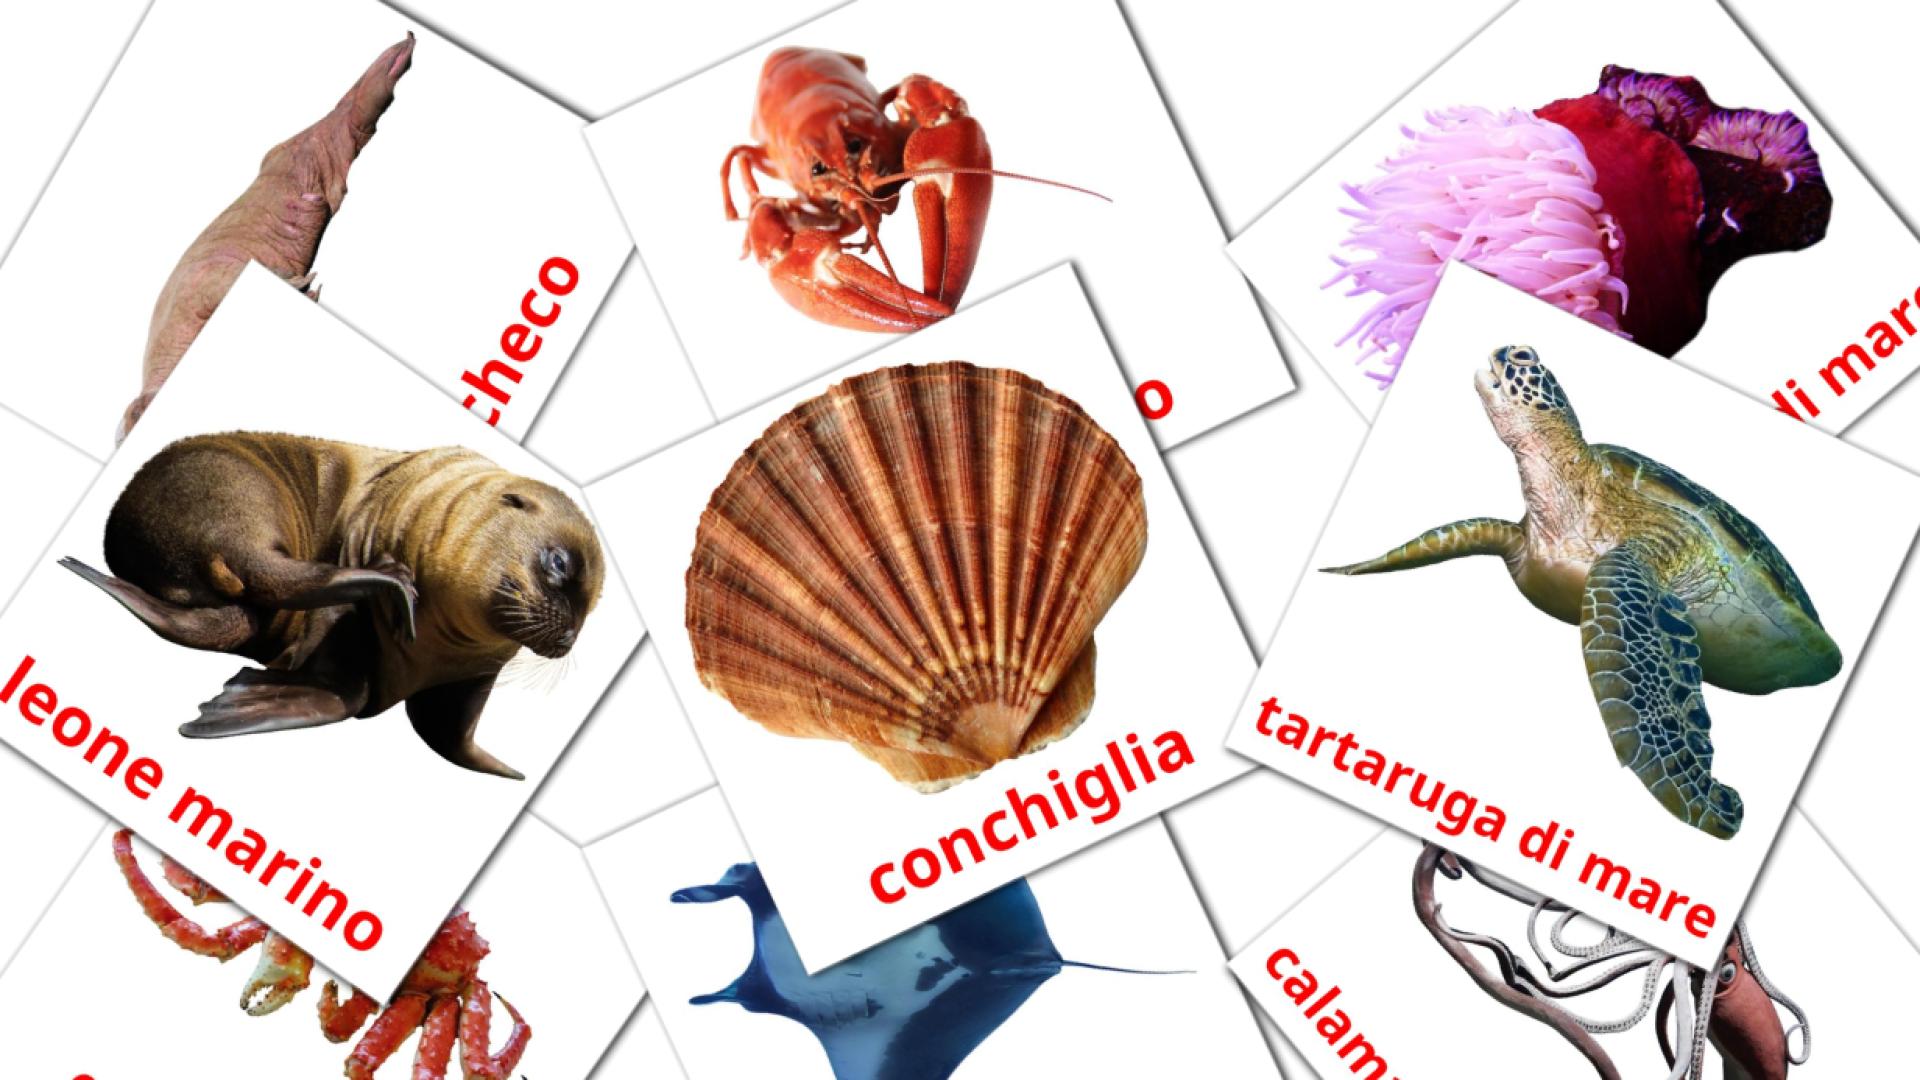 29 Animali marini flashcards